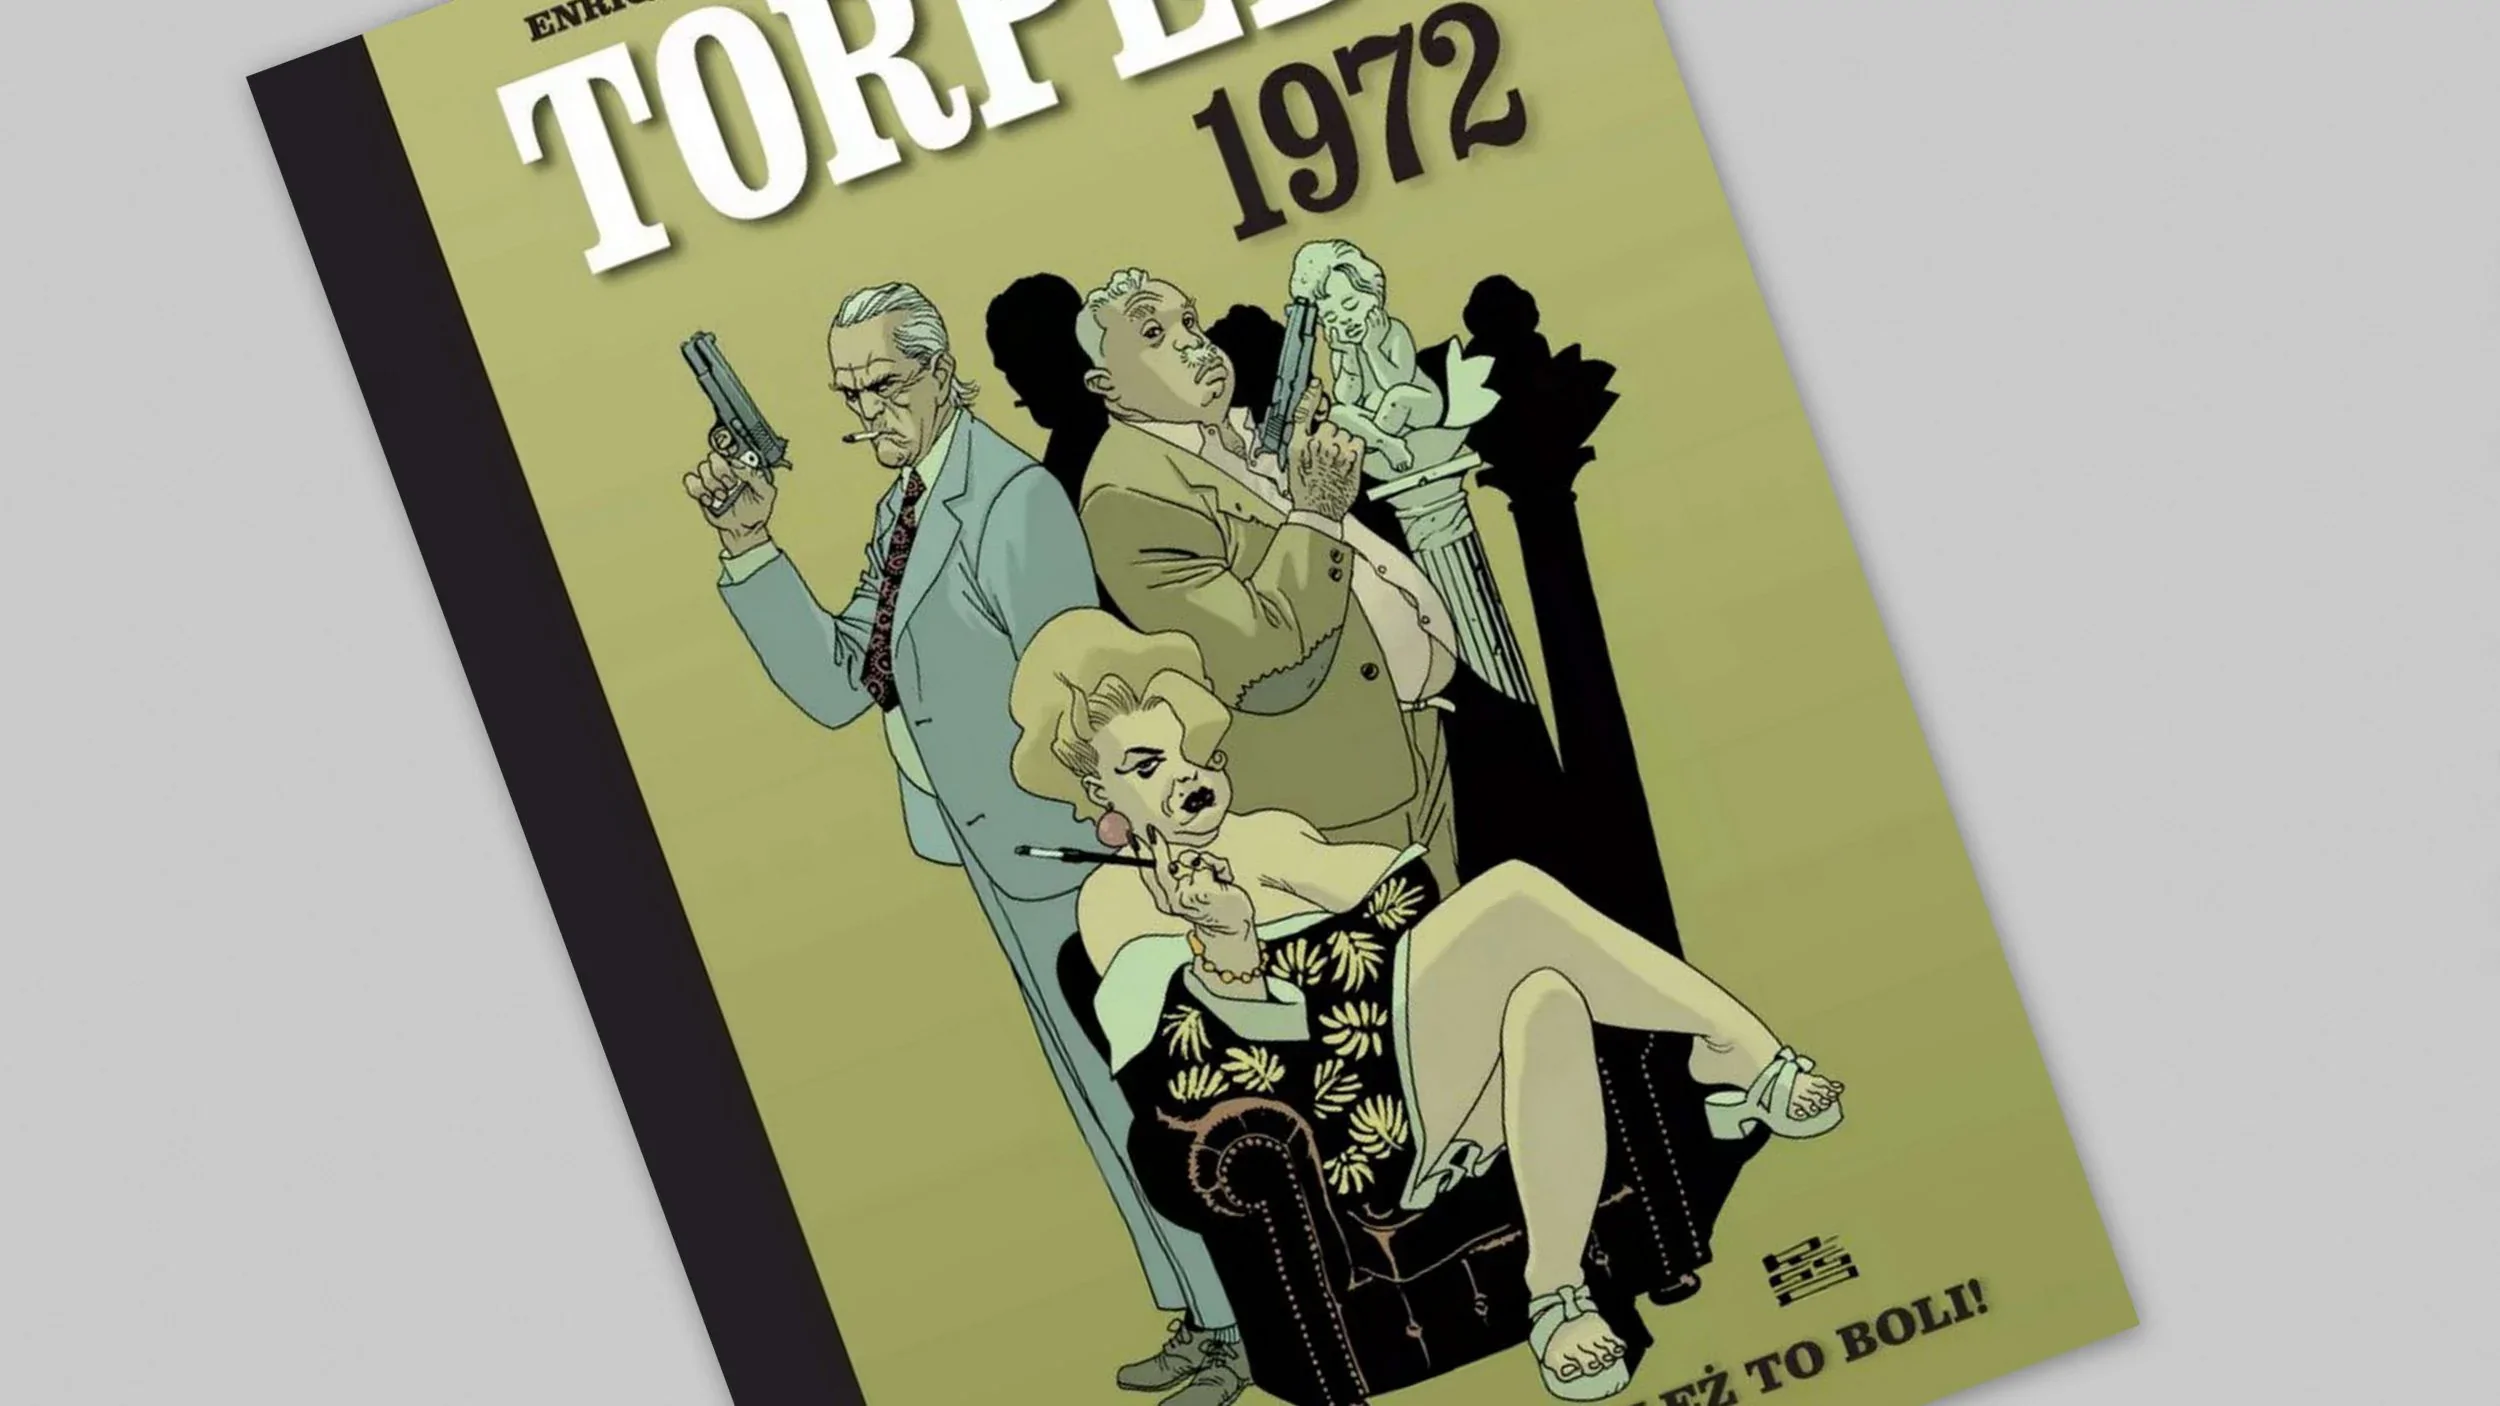 Torpedo 1972 - O losie, ależ to boli! - recenzja komiksu